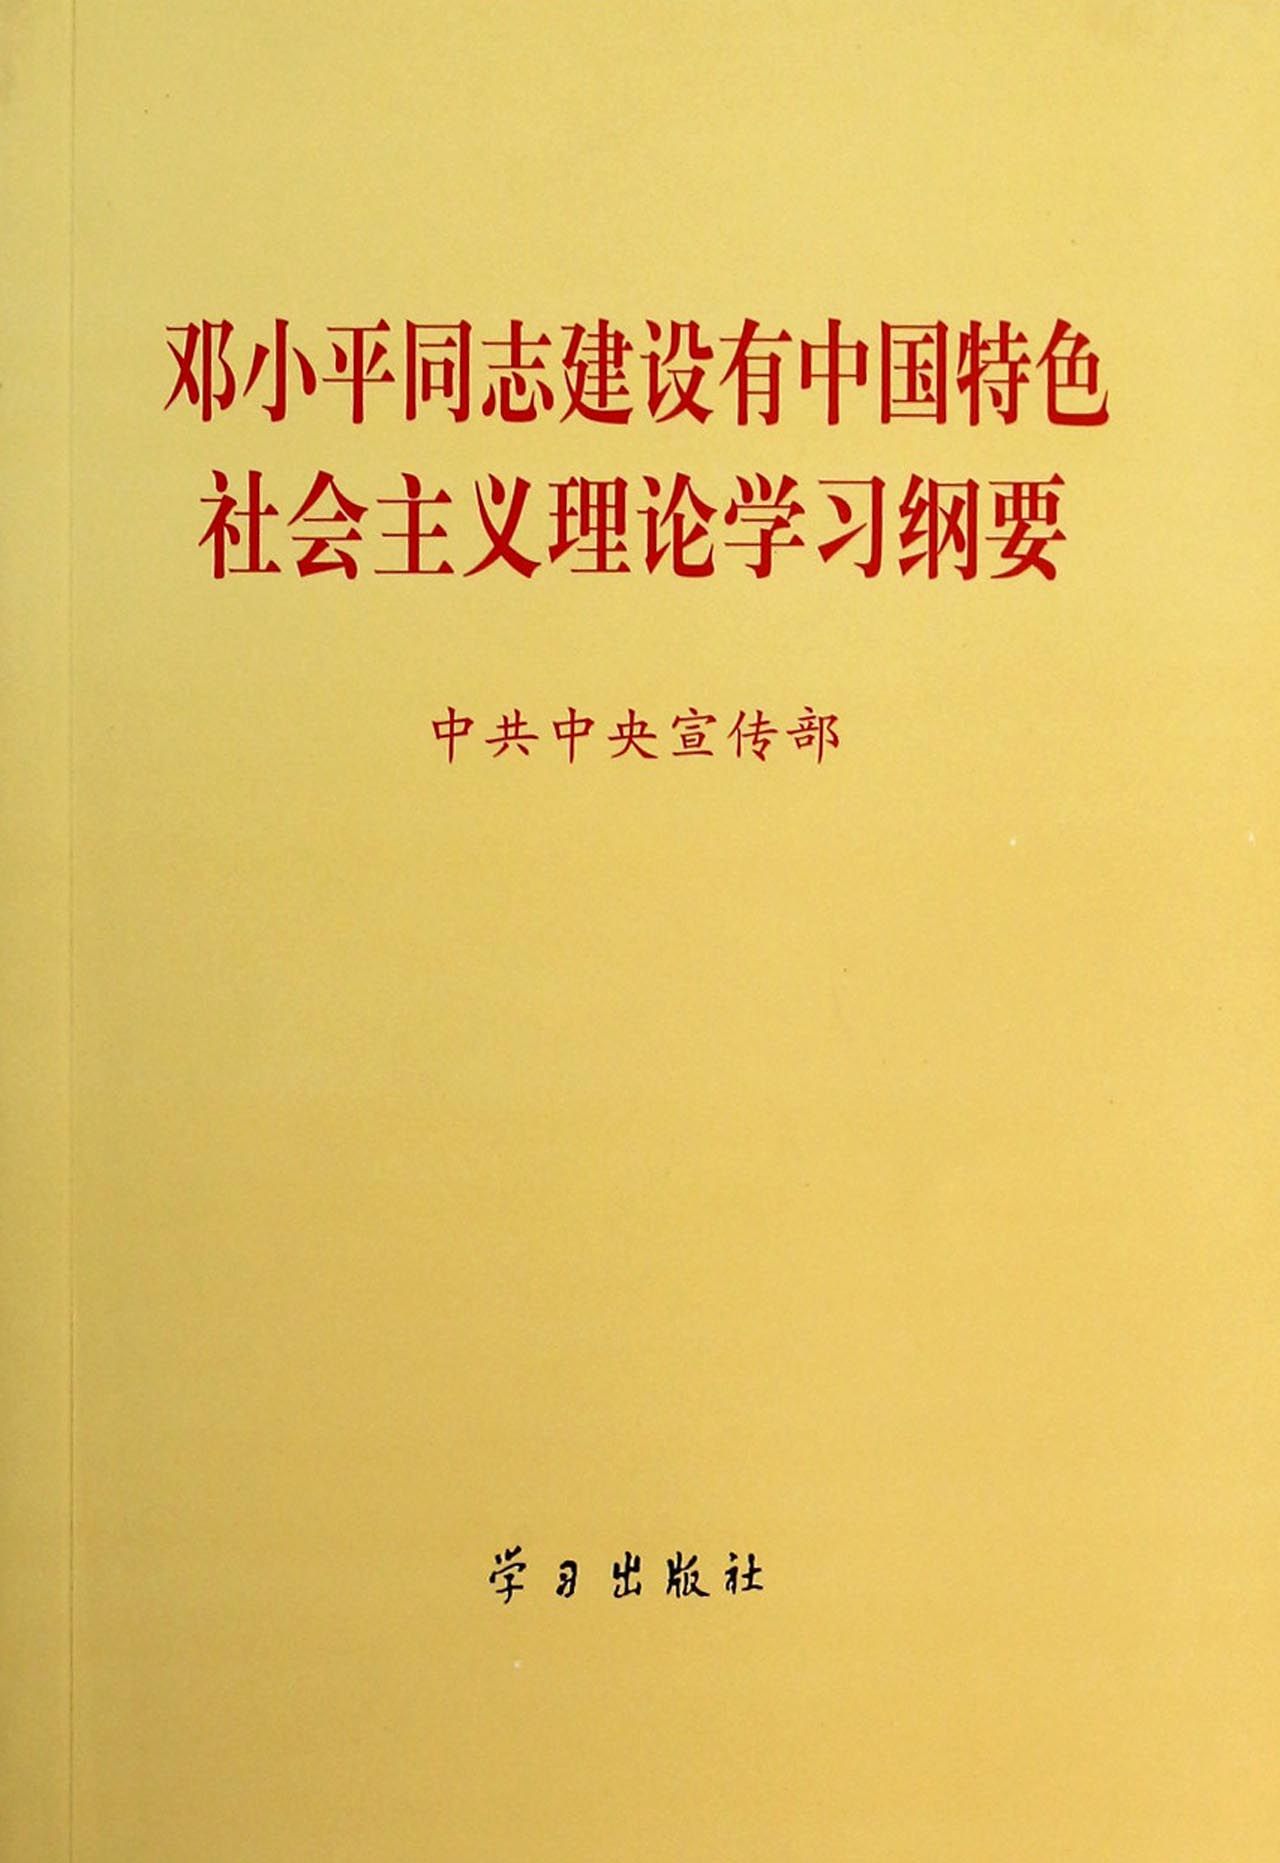 邓小平建设有中国特色社会主义理论的内容包括